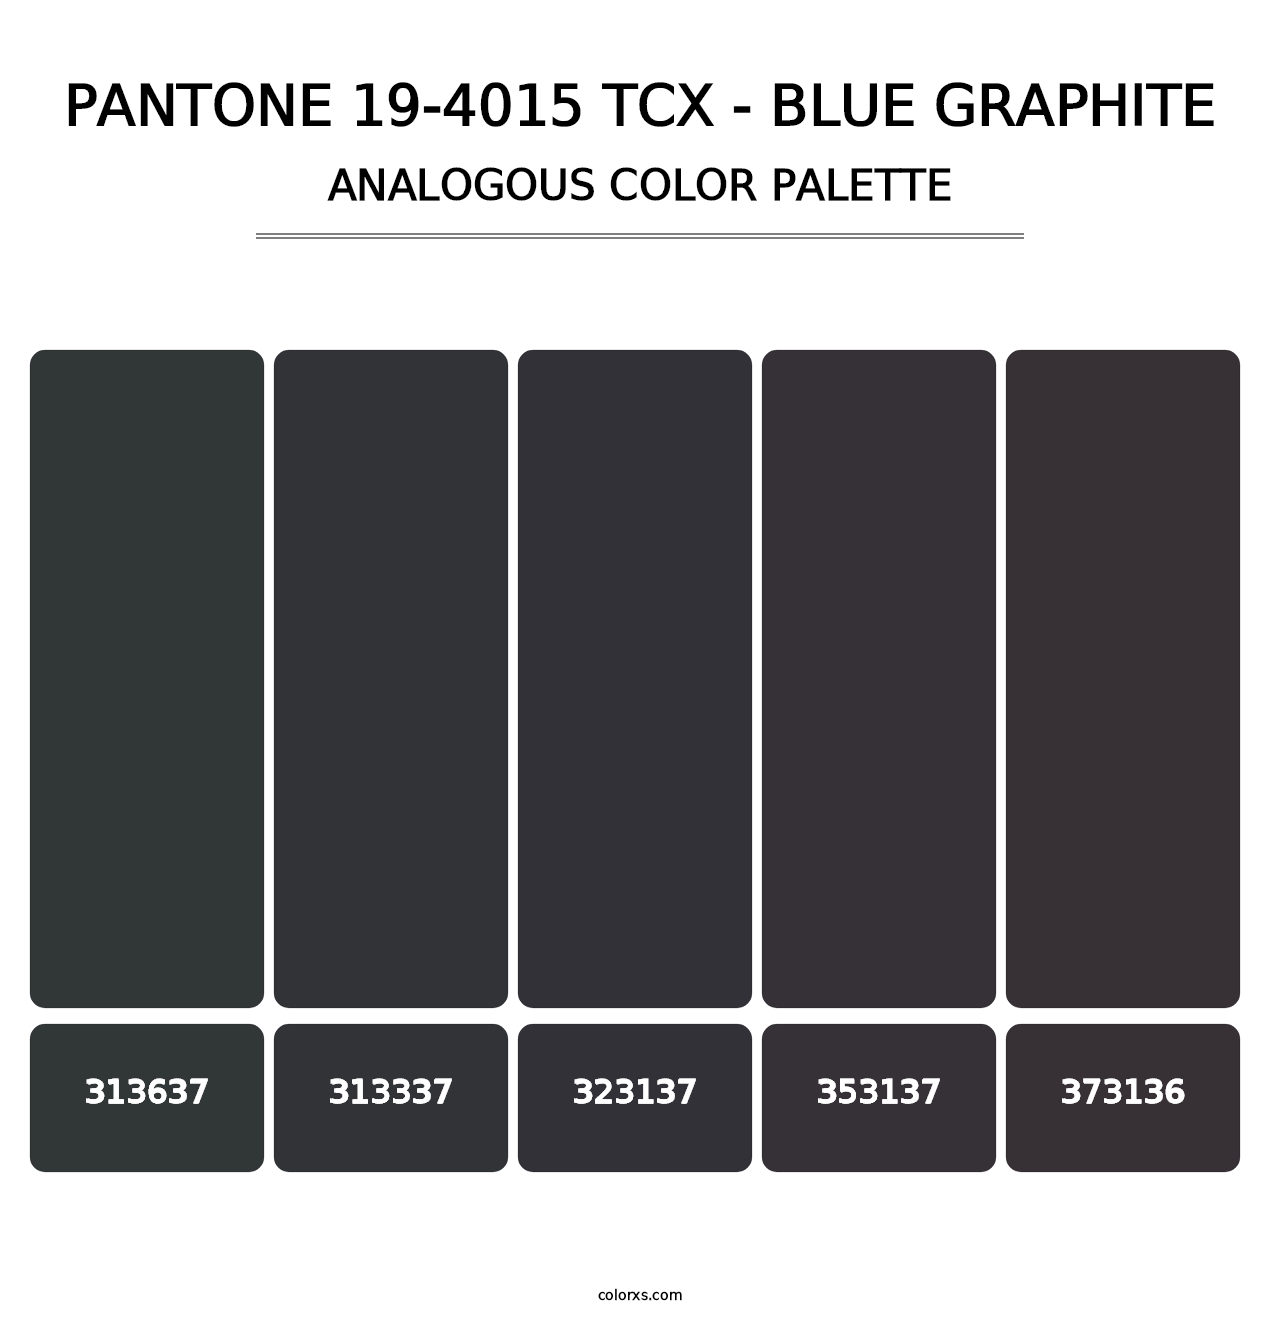 PANTONE 19-4015 TCX - Blue Graphite - Analogous Color Palette